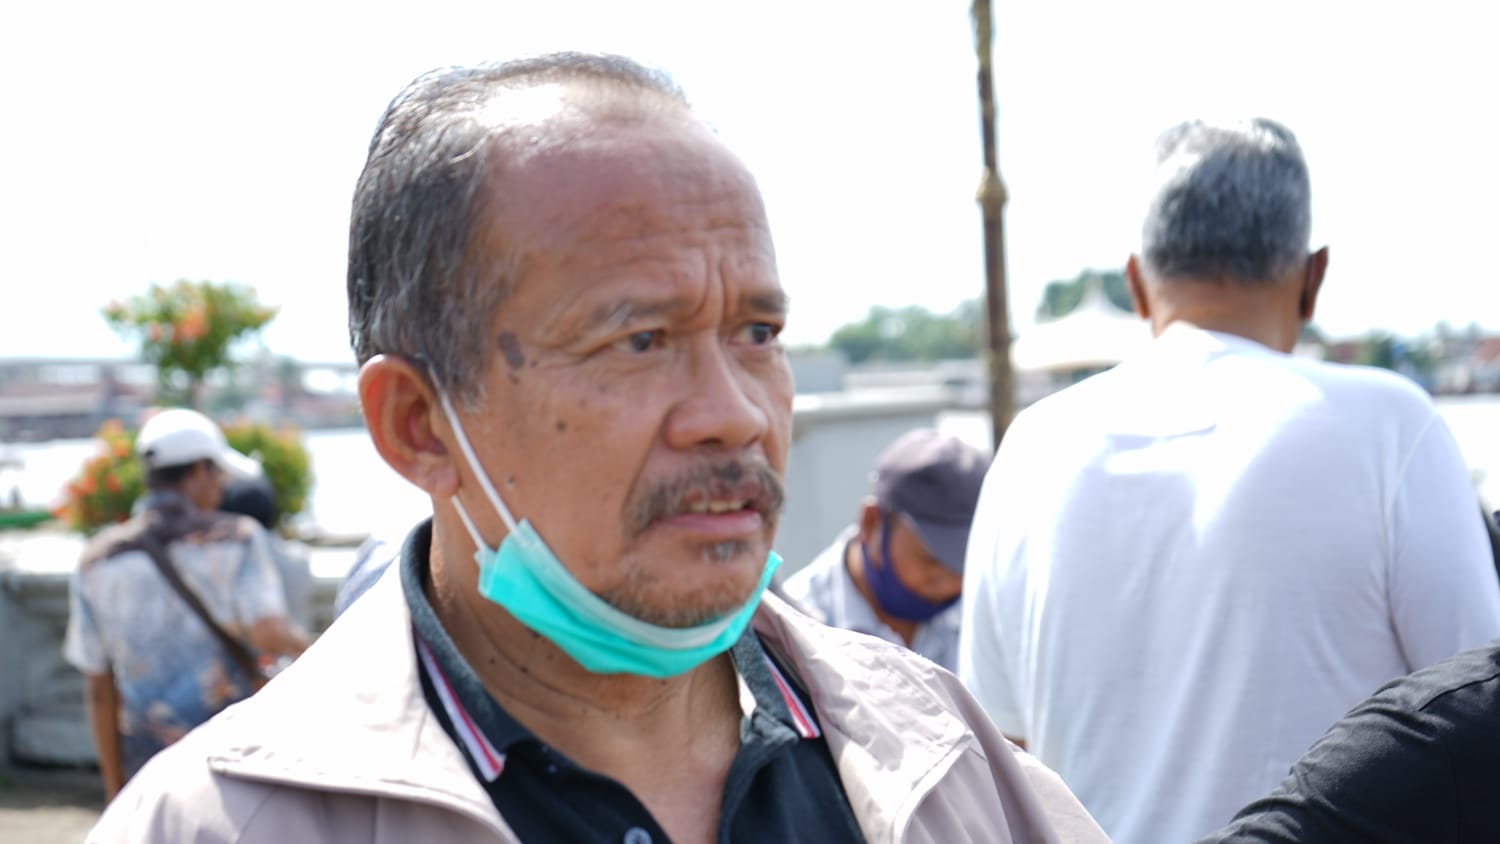 Rangkap Jabatan Pejabat di Kemenkeu, Beathor: Sri Mulyani Diam-diam Melawan Jokowi